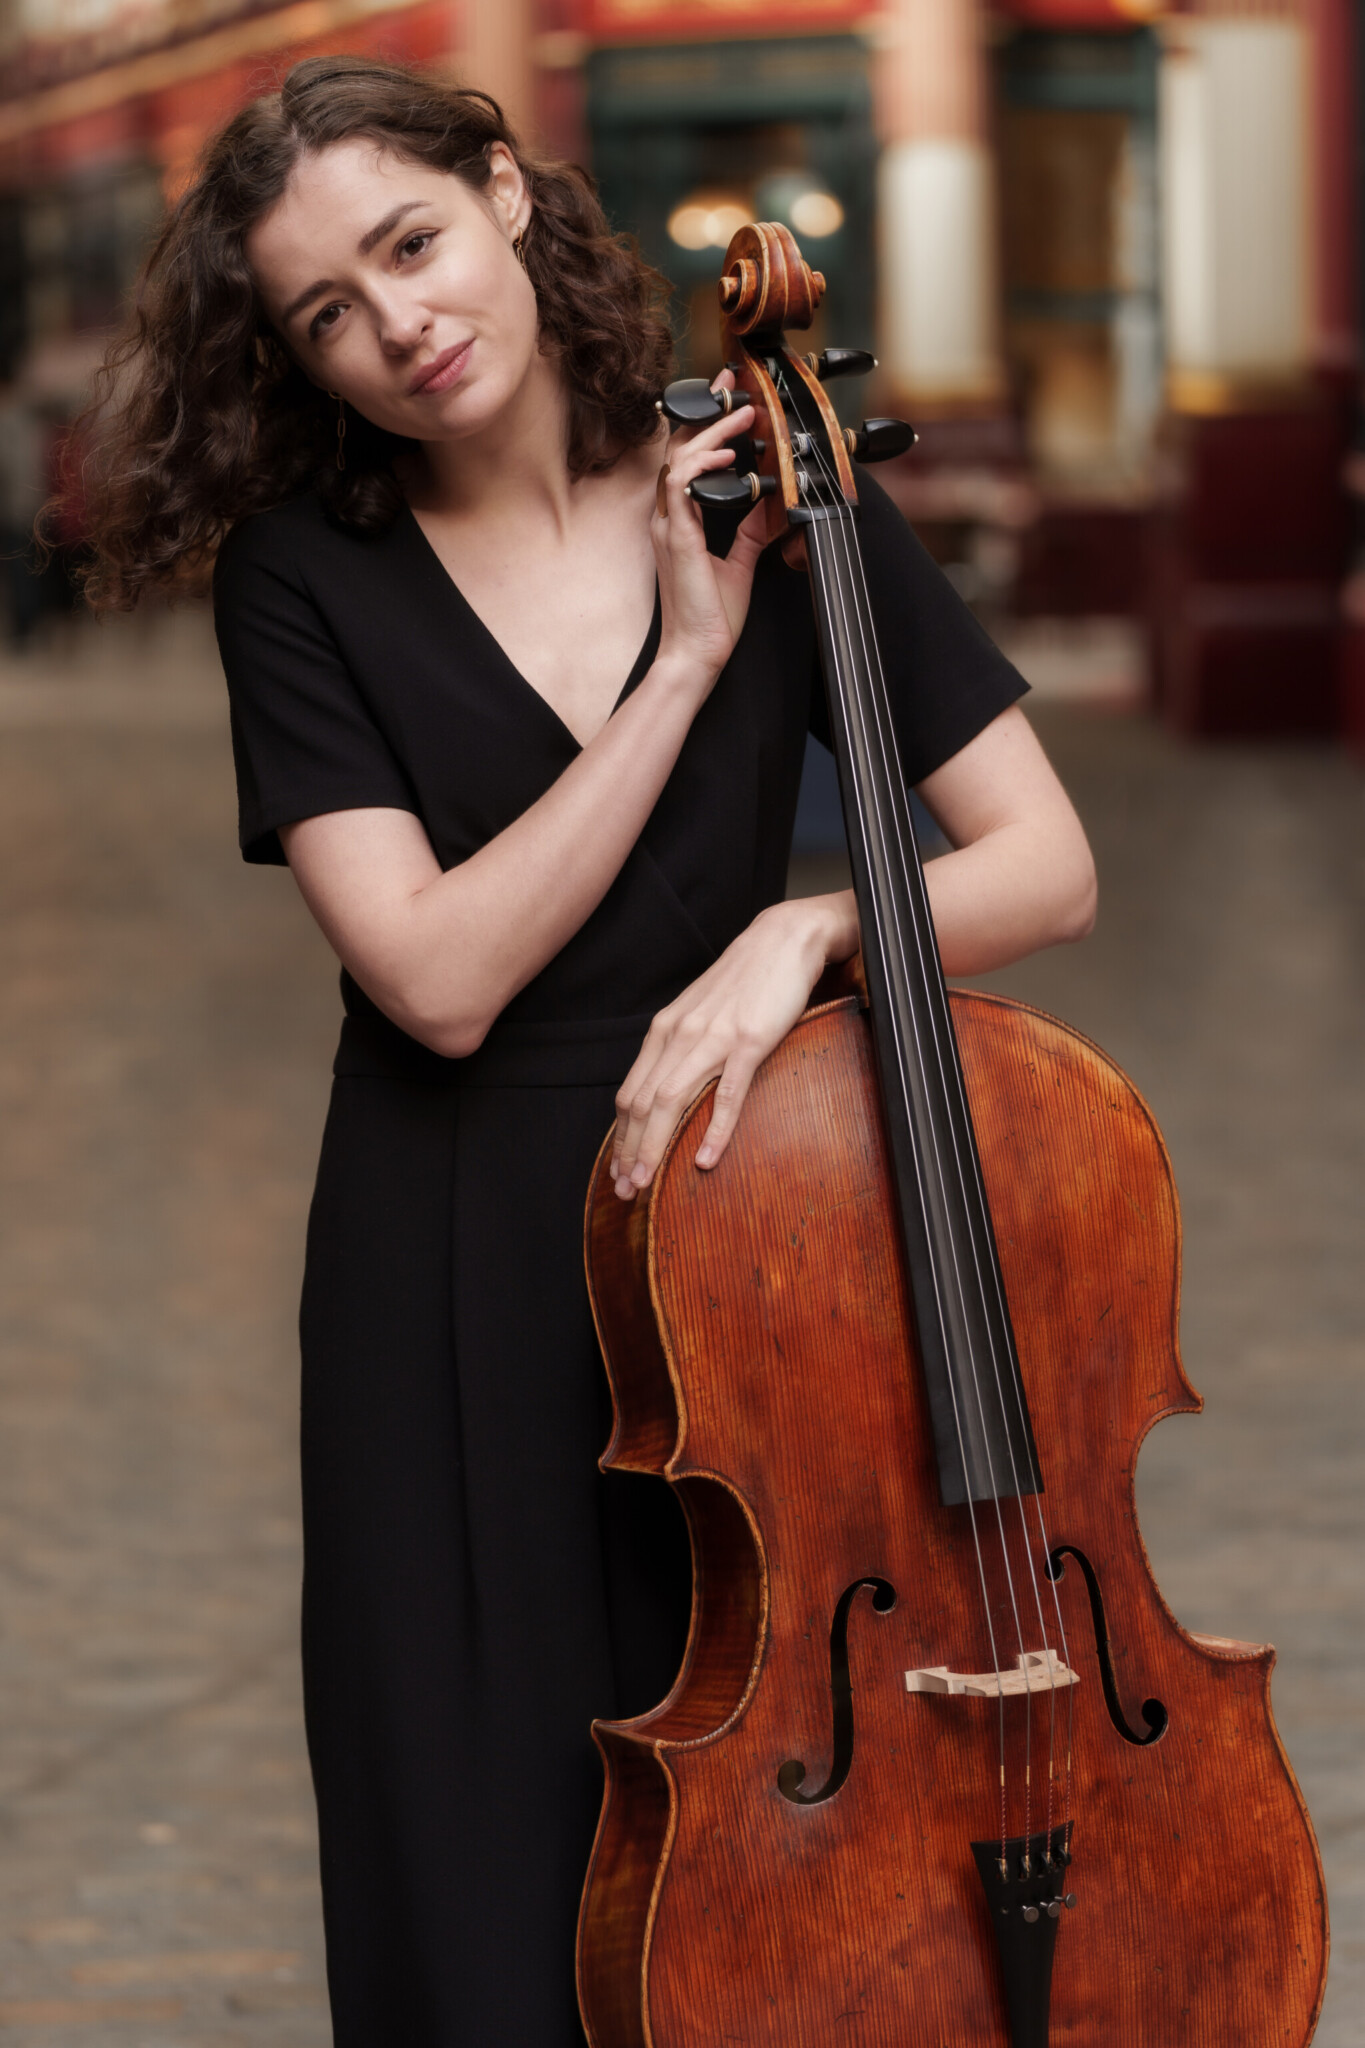 Cellistin Anastasia Kobekina wurde bereits 2016 mit dem WEMAG-Solistenpreis ausgezeichnet